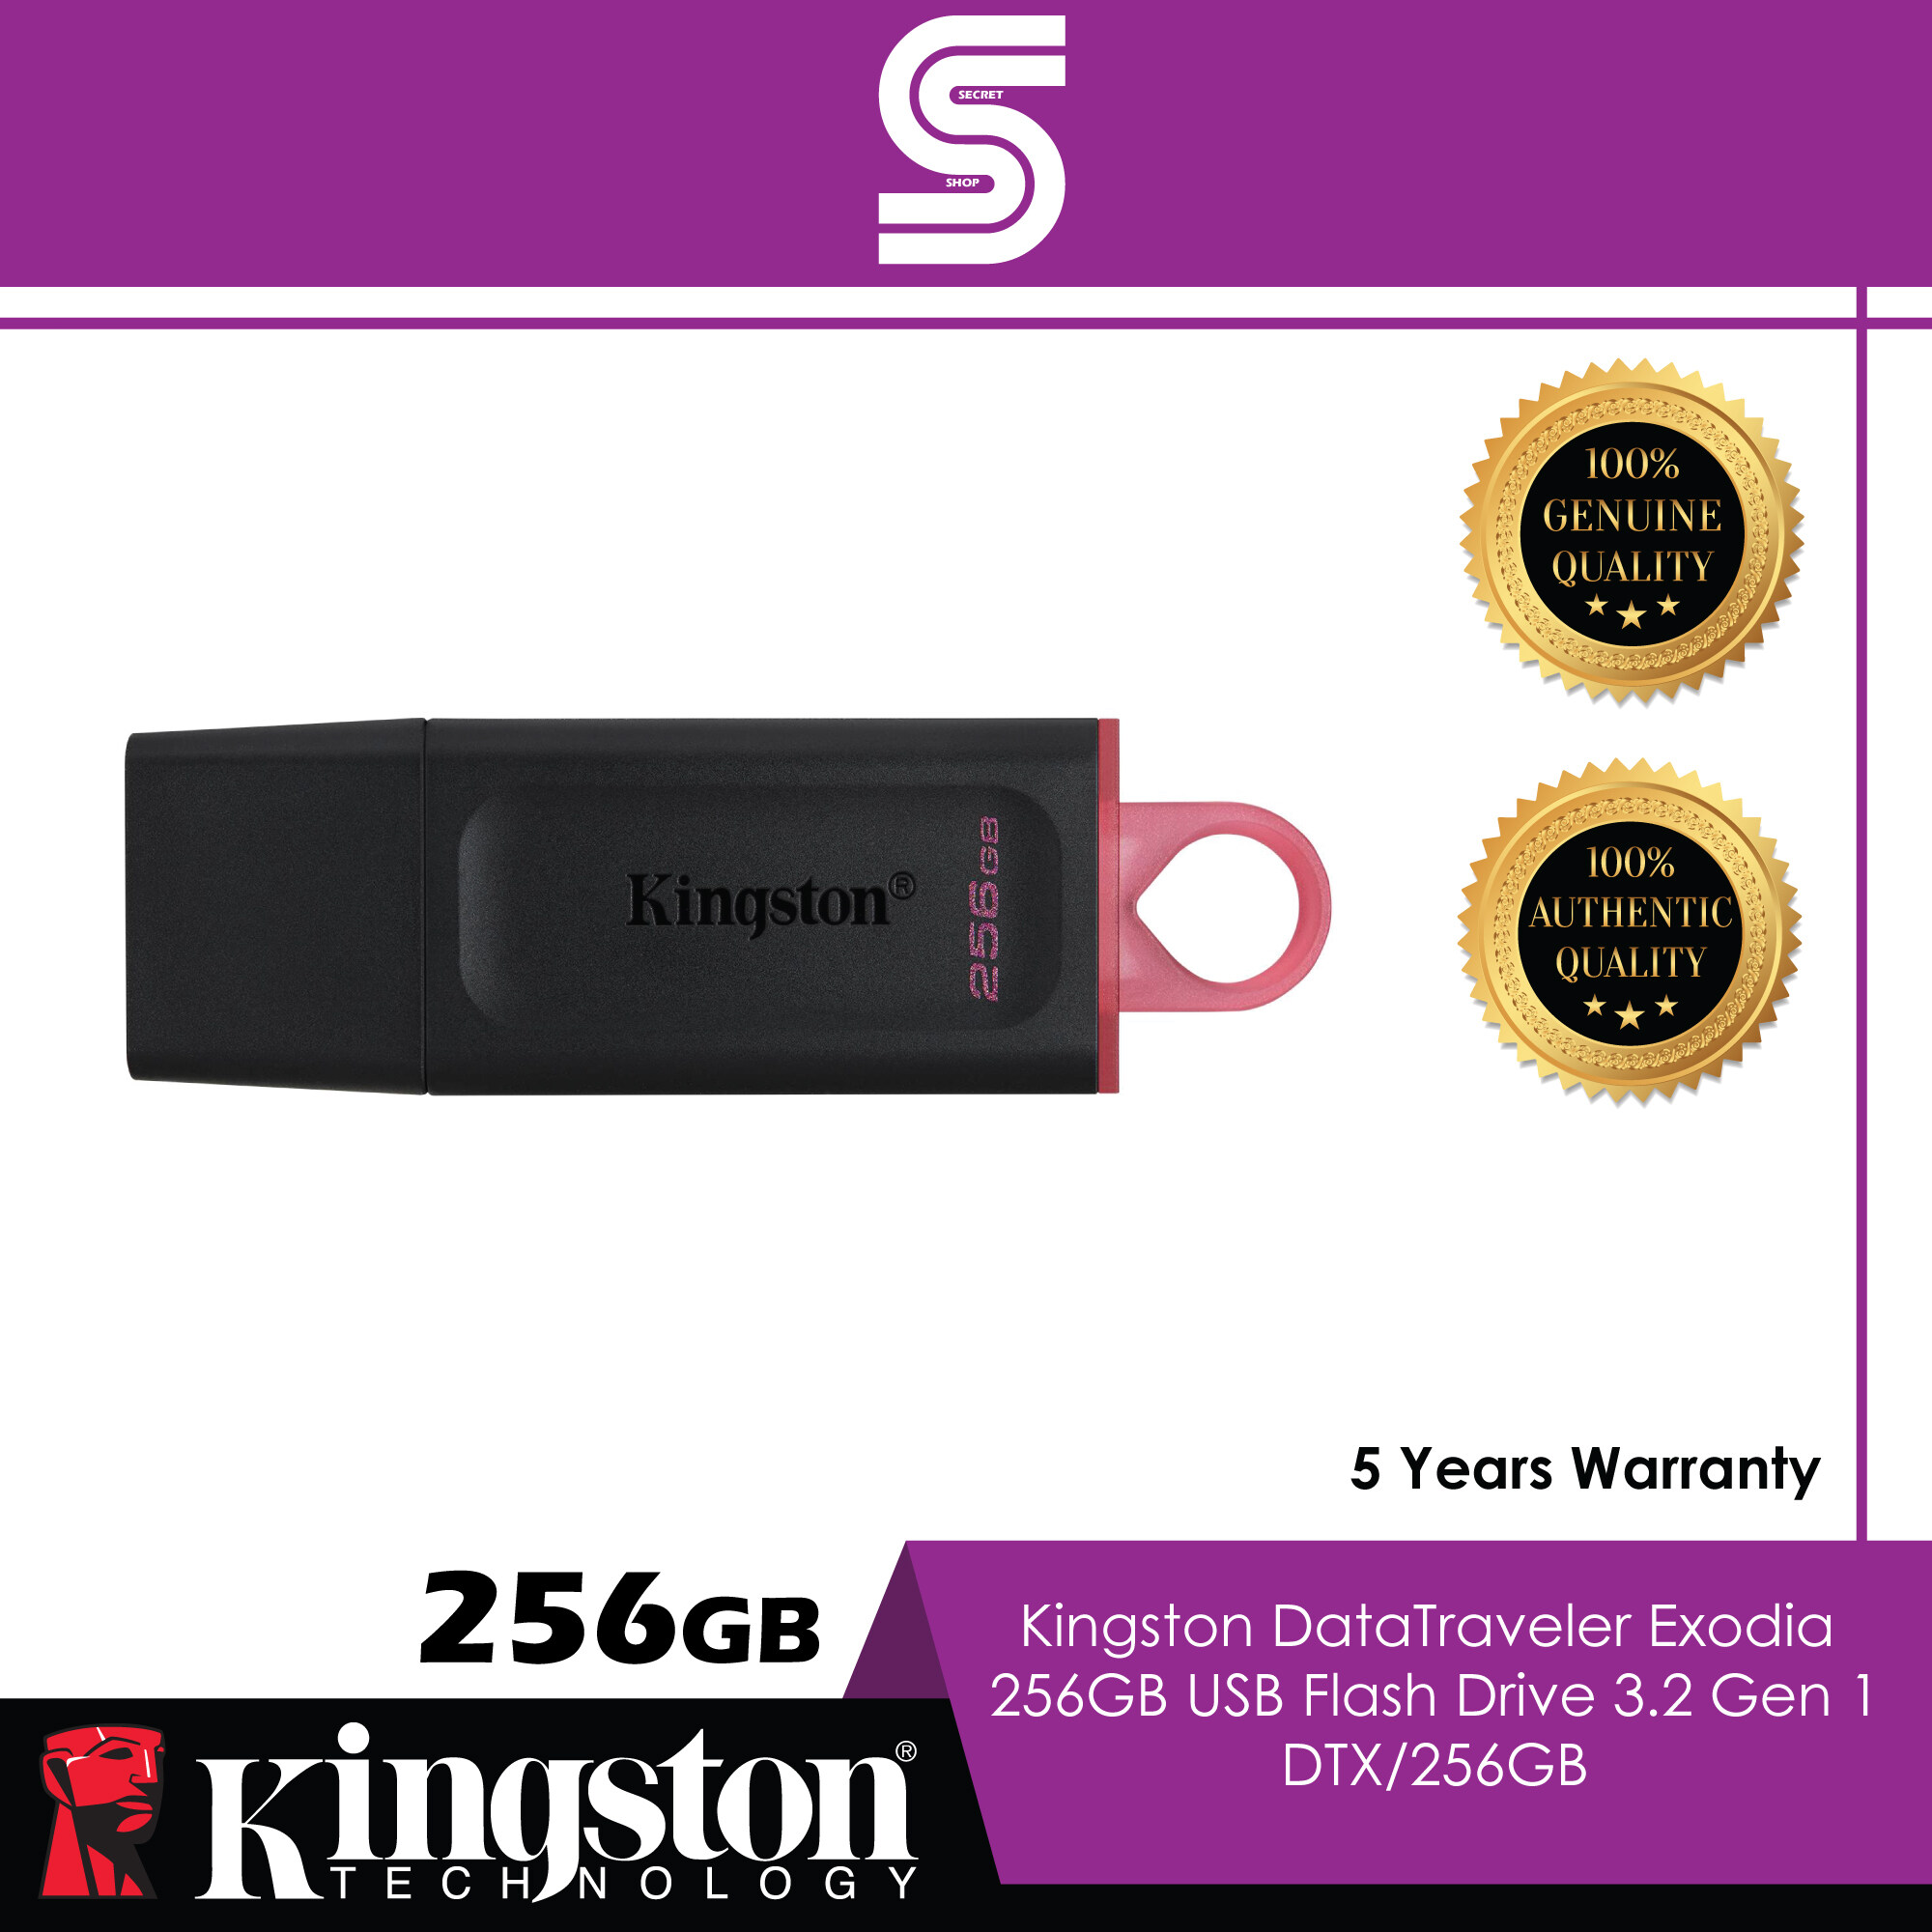 Kingston DataTraveler Exodia 256GB USB Flash Drive 3.2 Gen 1 - DTX/256GB